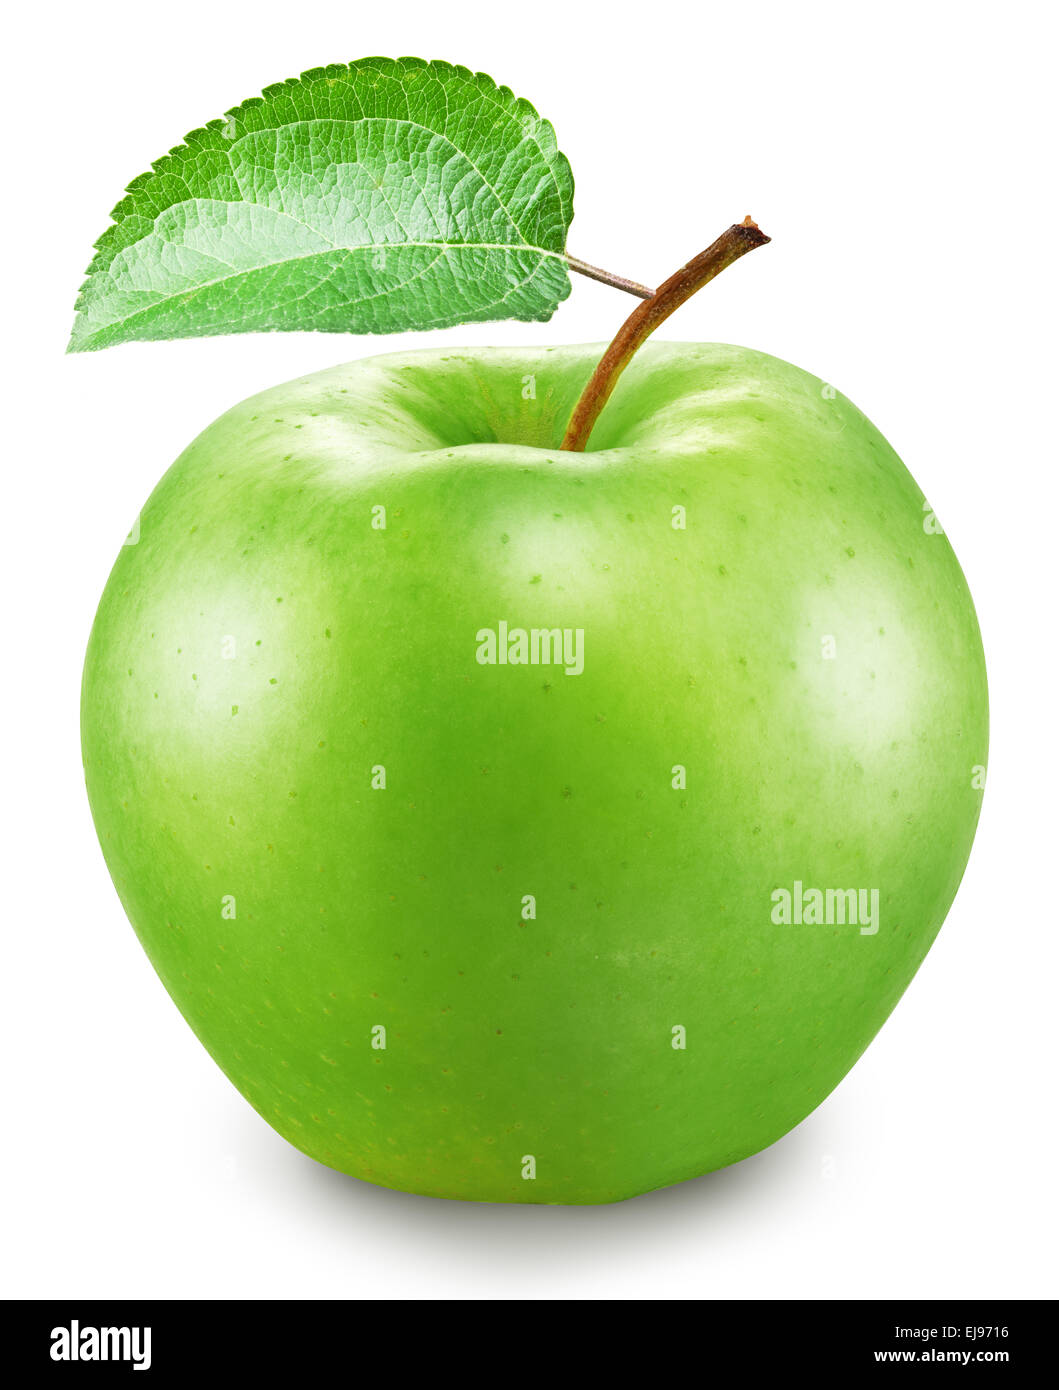 Grüner Apfel auf einem weißen Hintergrund. Datei enthält Beschneidungspfade. Stockfoto